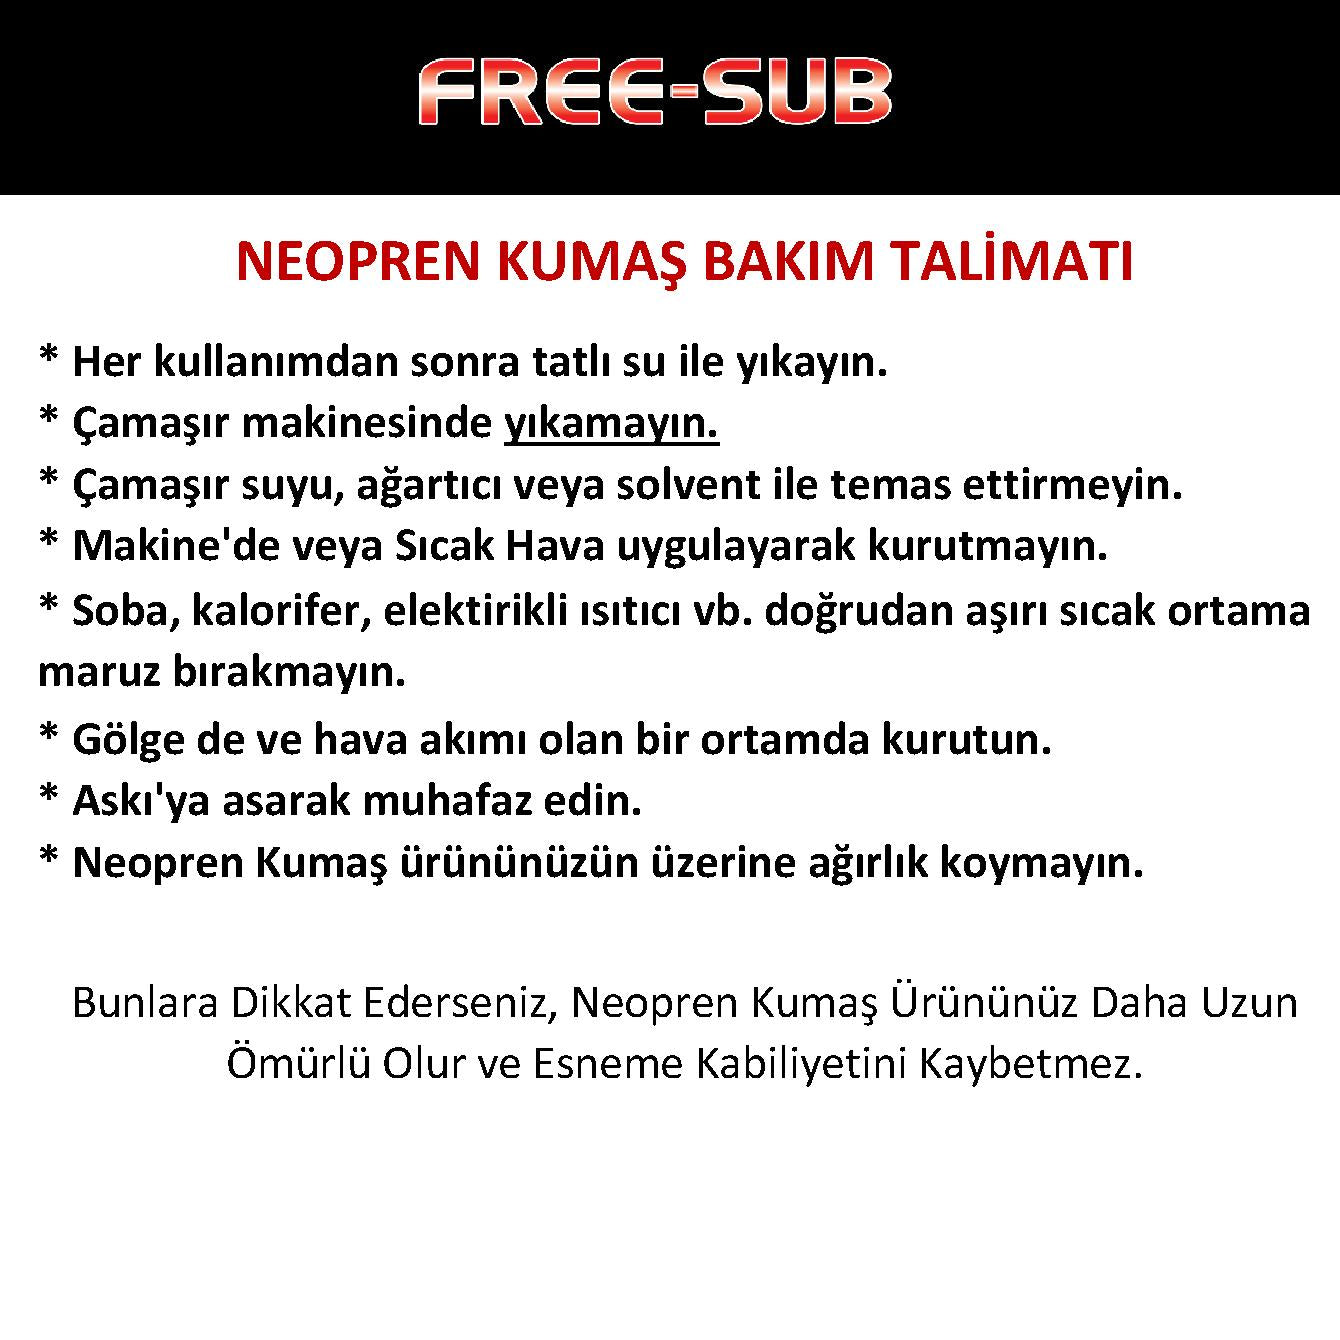 Free-Sub 5mm Ege, Scuba, Tüplü Dalış Elbisesi - Dalış Elbisesi Market